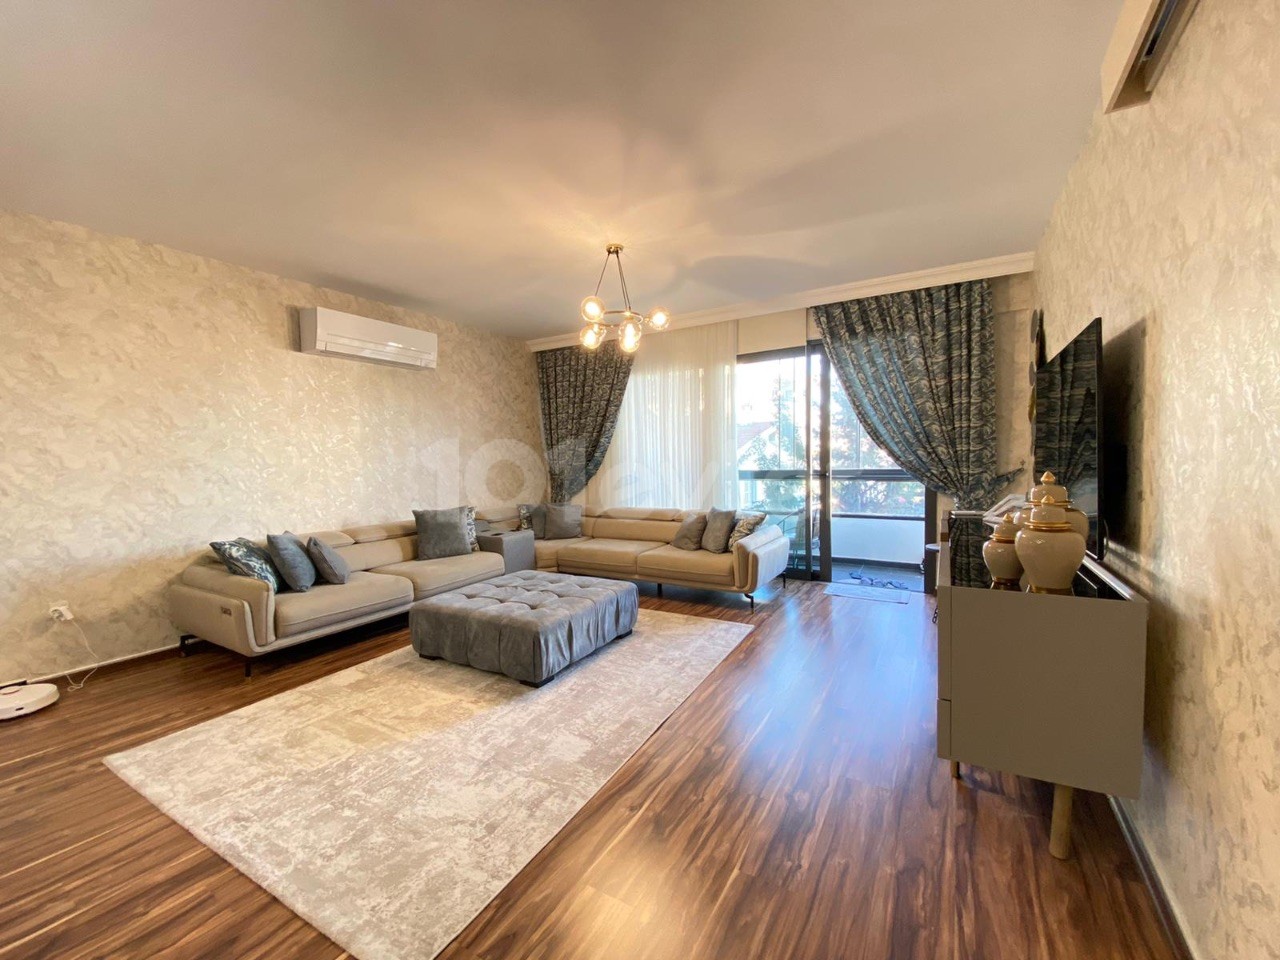 Ultraluxuriöse 2+1-Wohnung zum Verkauf im Zentrum von Kyrenia, Zypern, an einem voll möblierten Grundstück